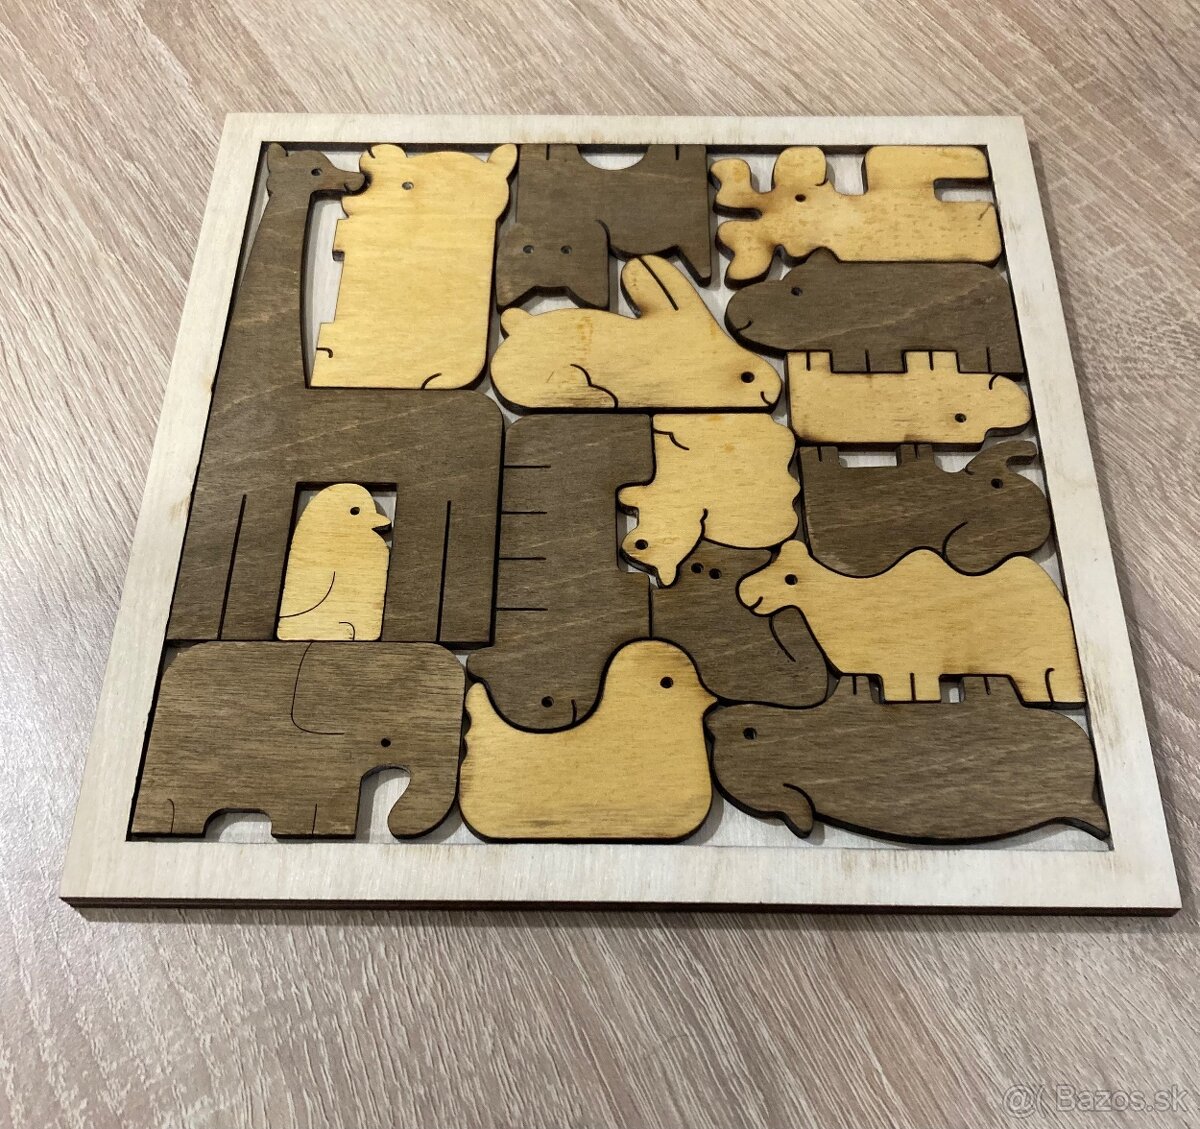 Krásne drevené puzzle so zvieratkami, ktoré do seba pasujú